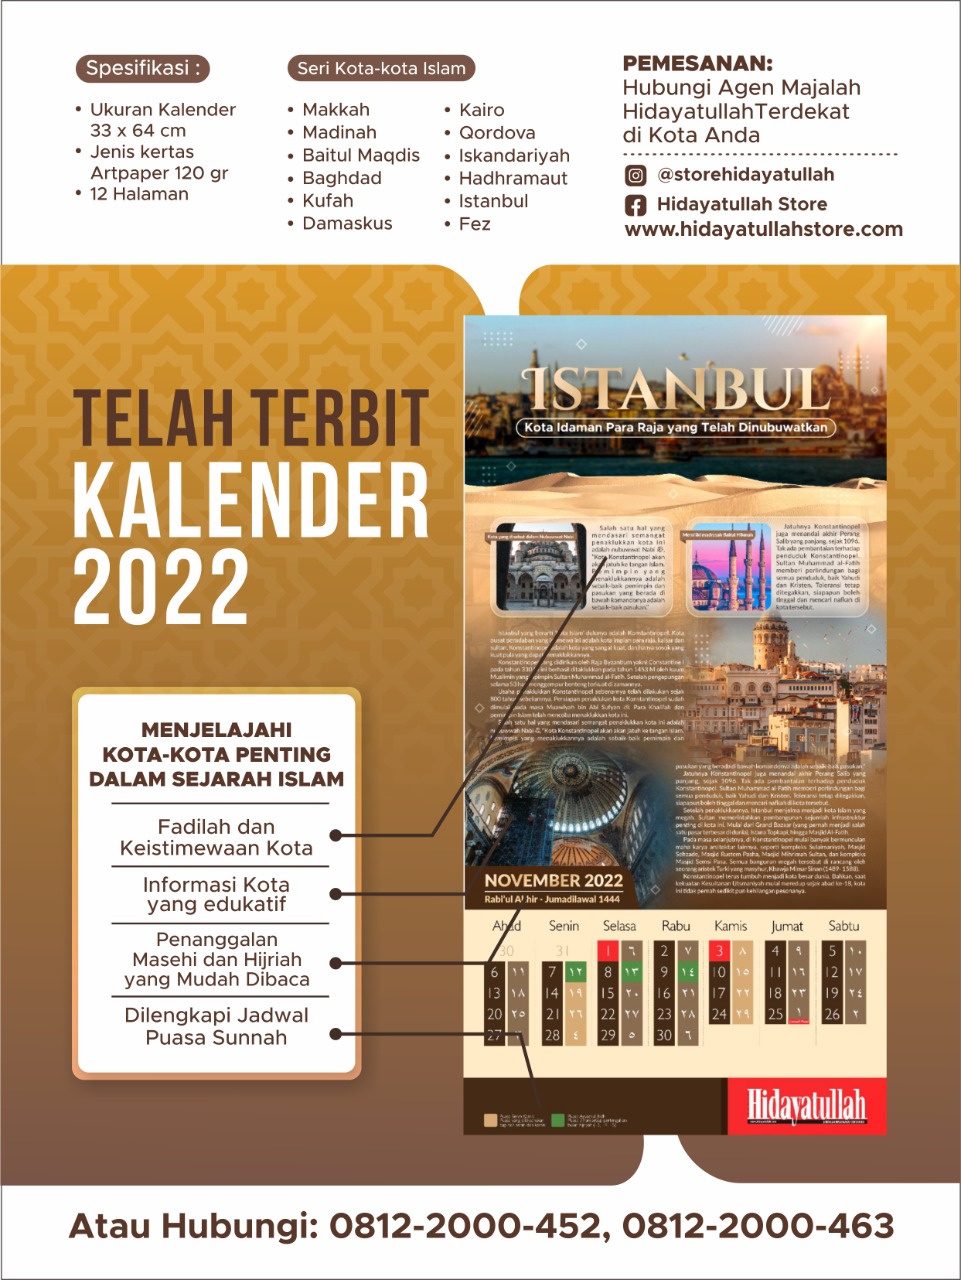 Kalender Islami. Kalender 2022 Lengkap Dengan Hijriyah.